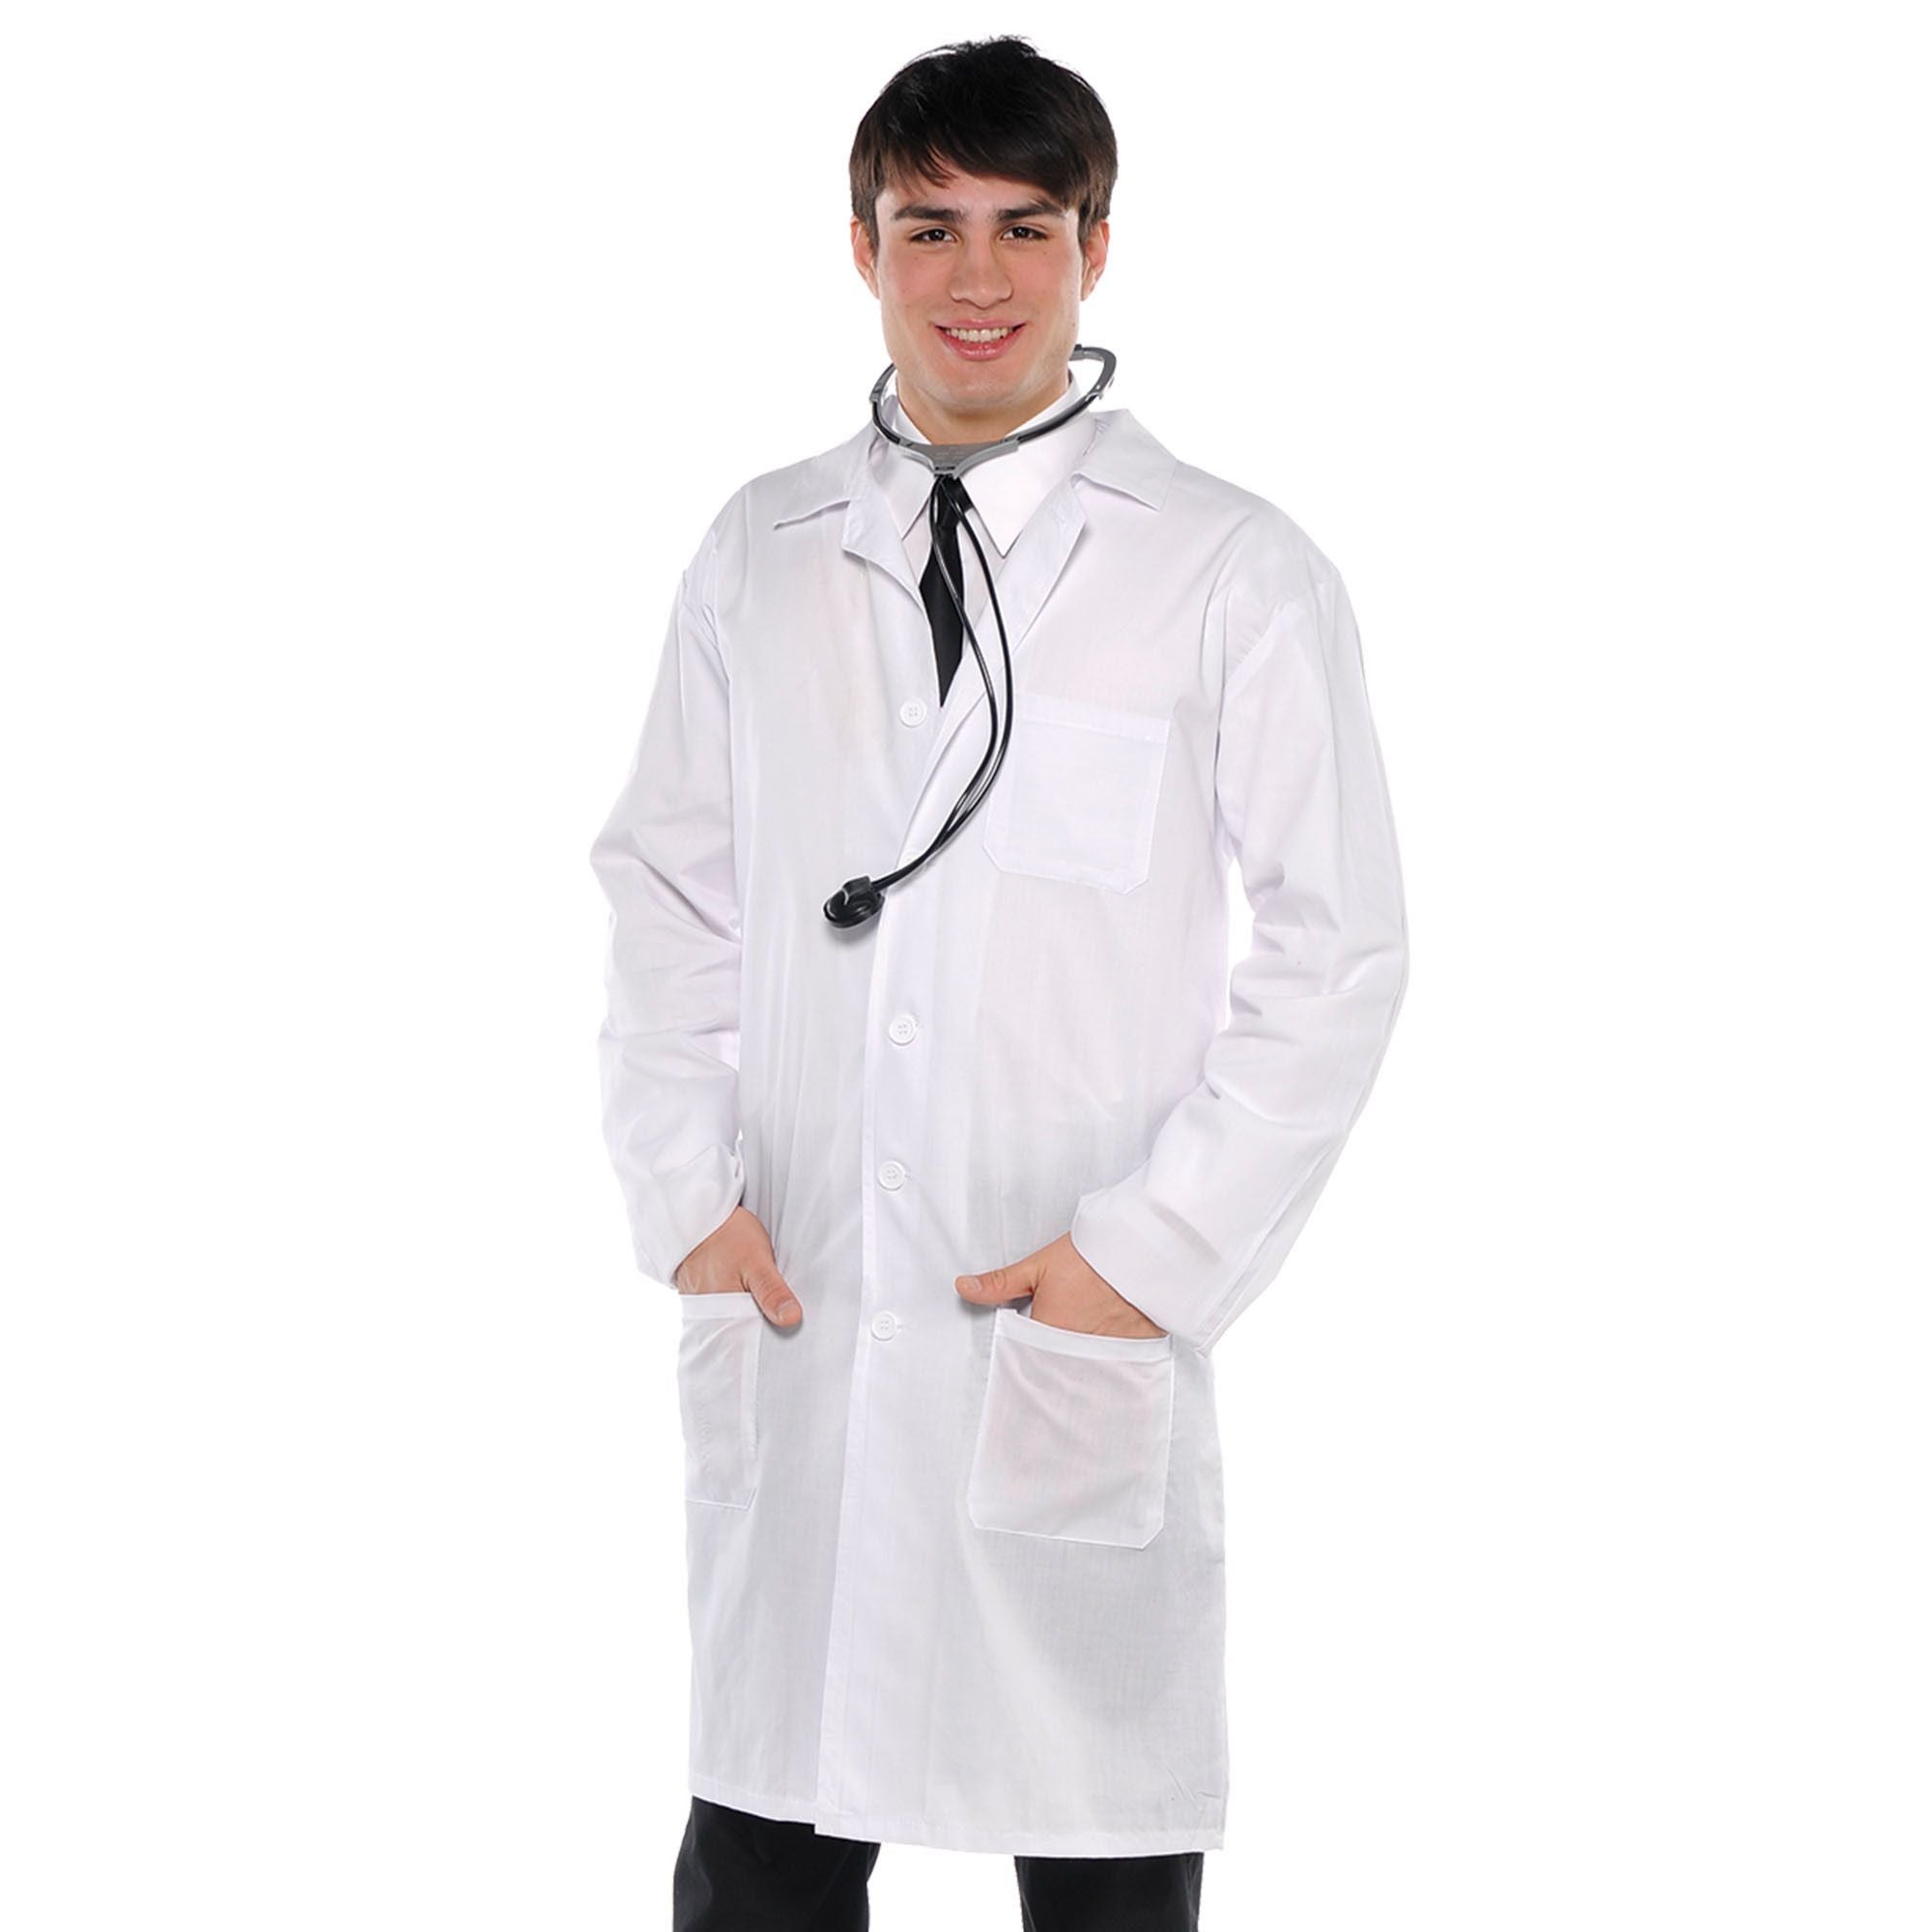 Doctor Coat | Adult